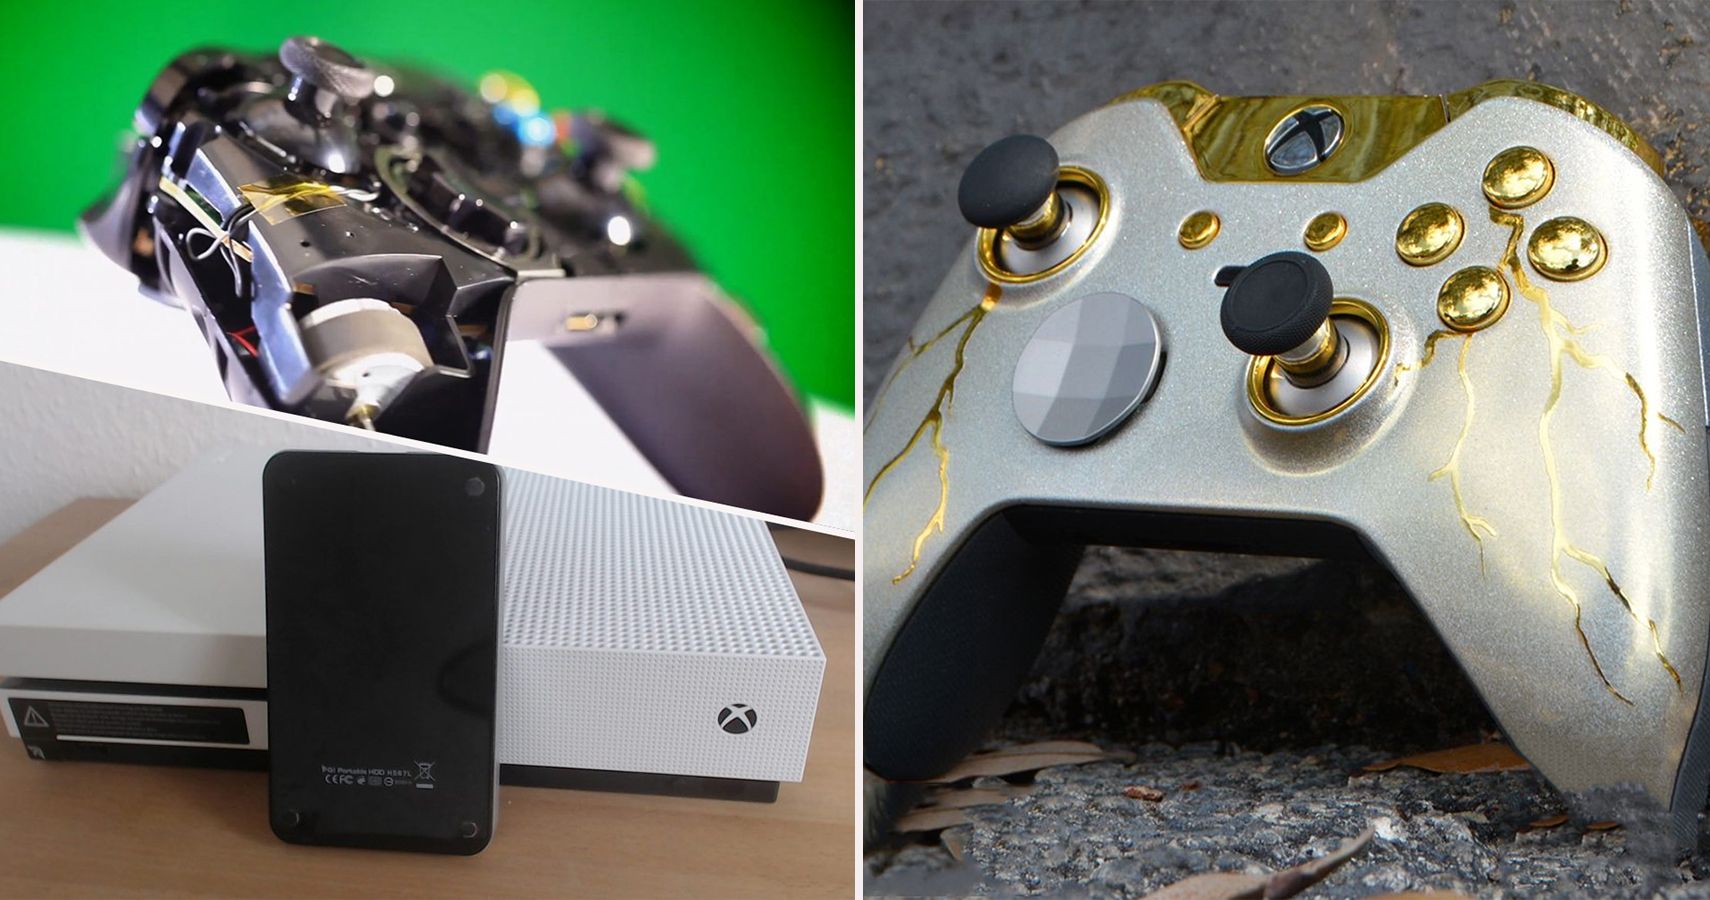 Maak los Eerste Monica 30 DIY Xbox One Hacks Every Gamer Should Know About